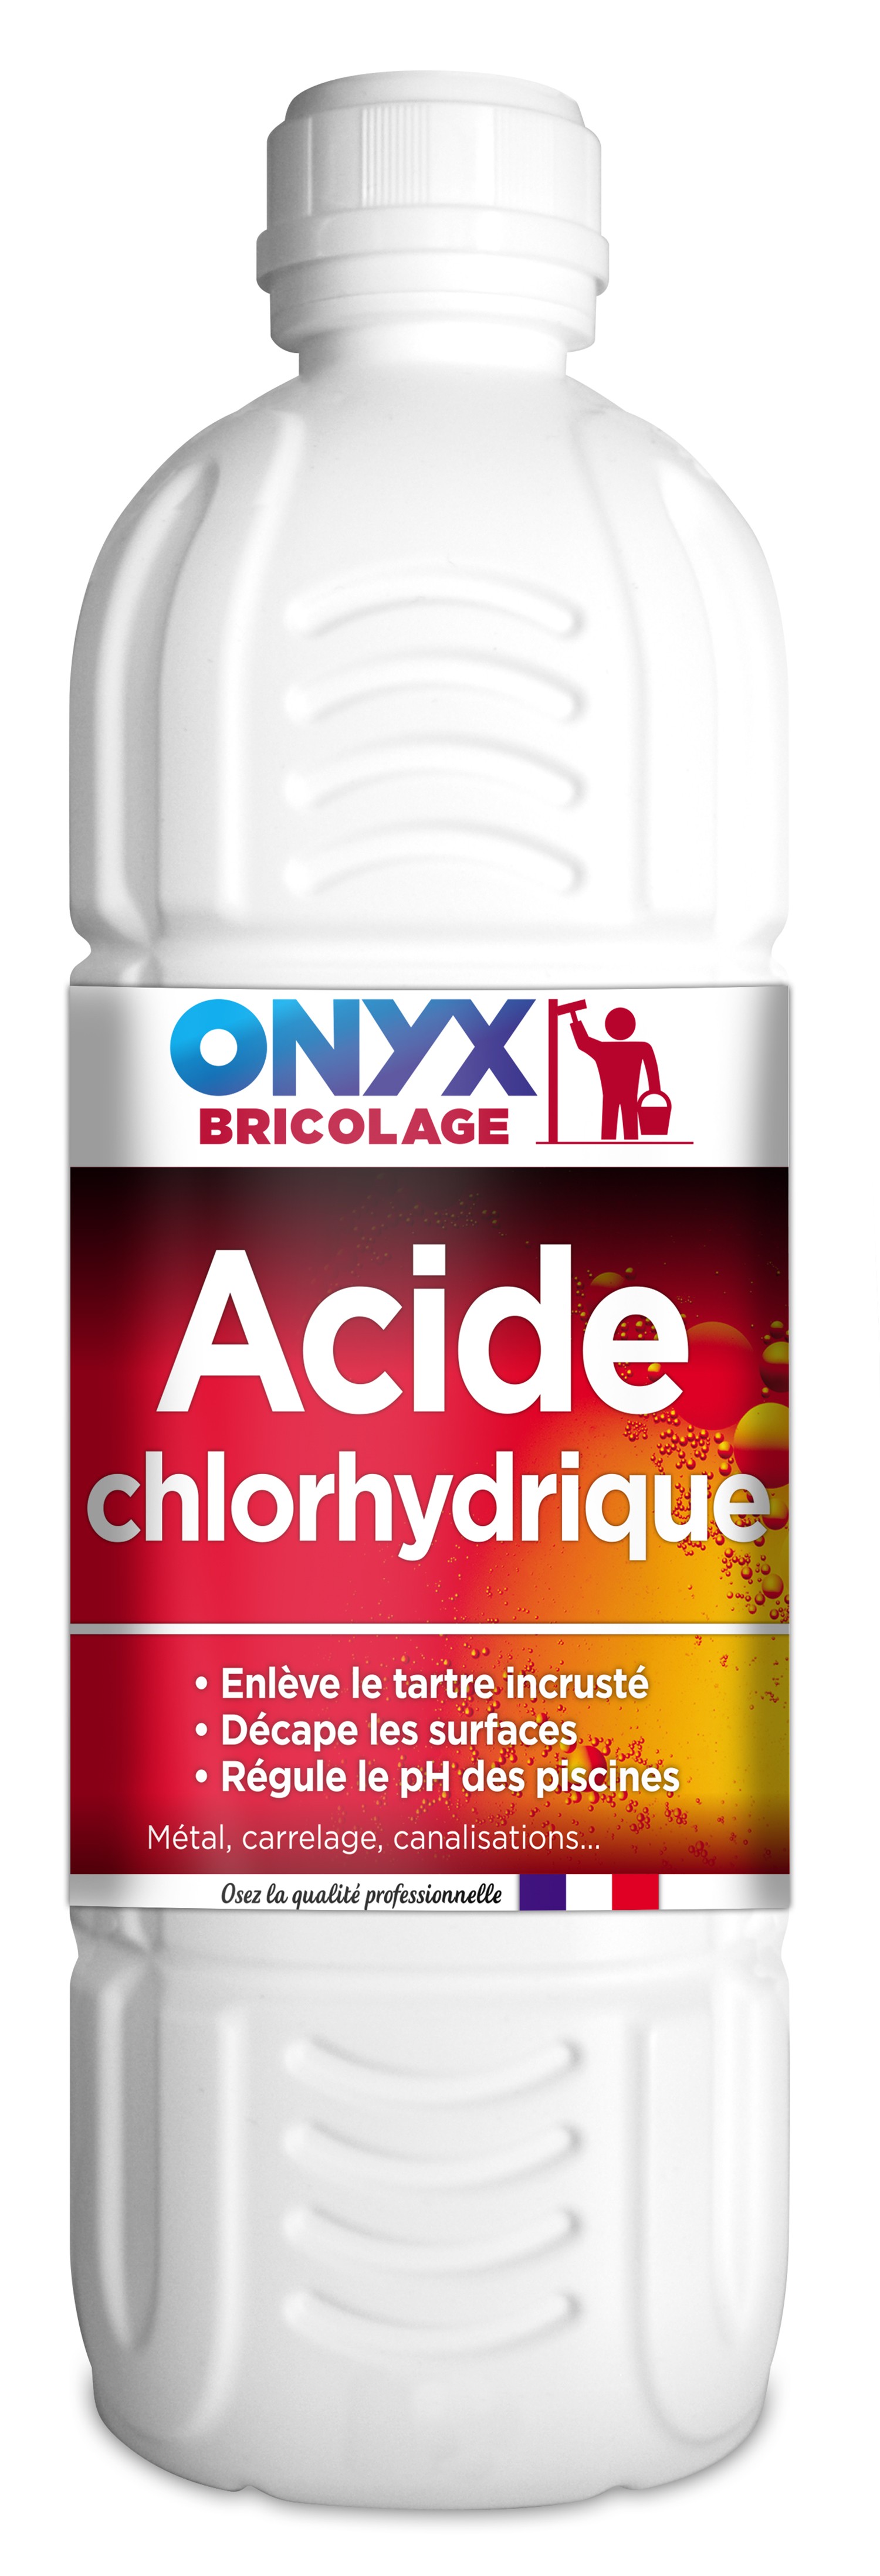 Acide chloridrique 23% 1 l